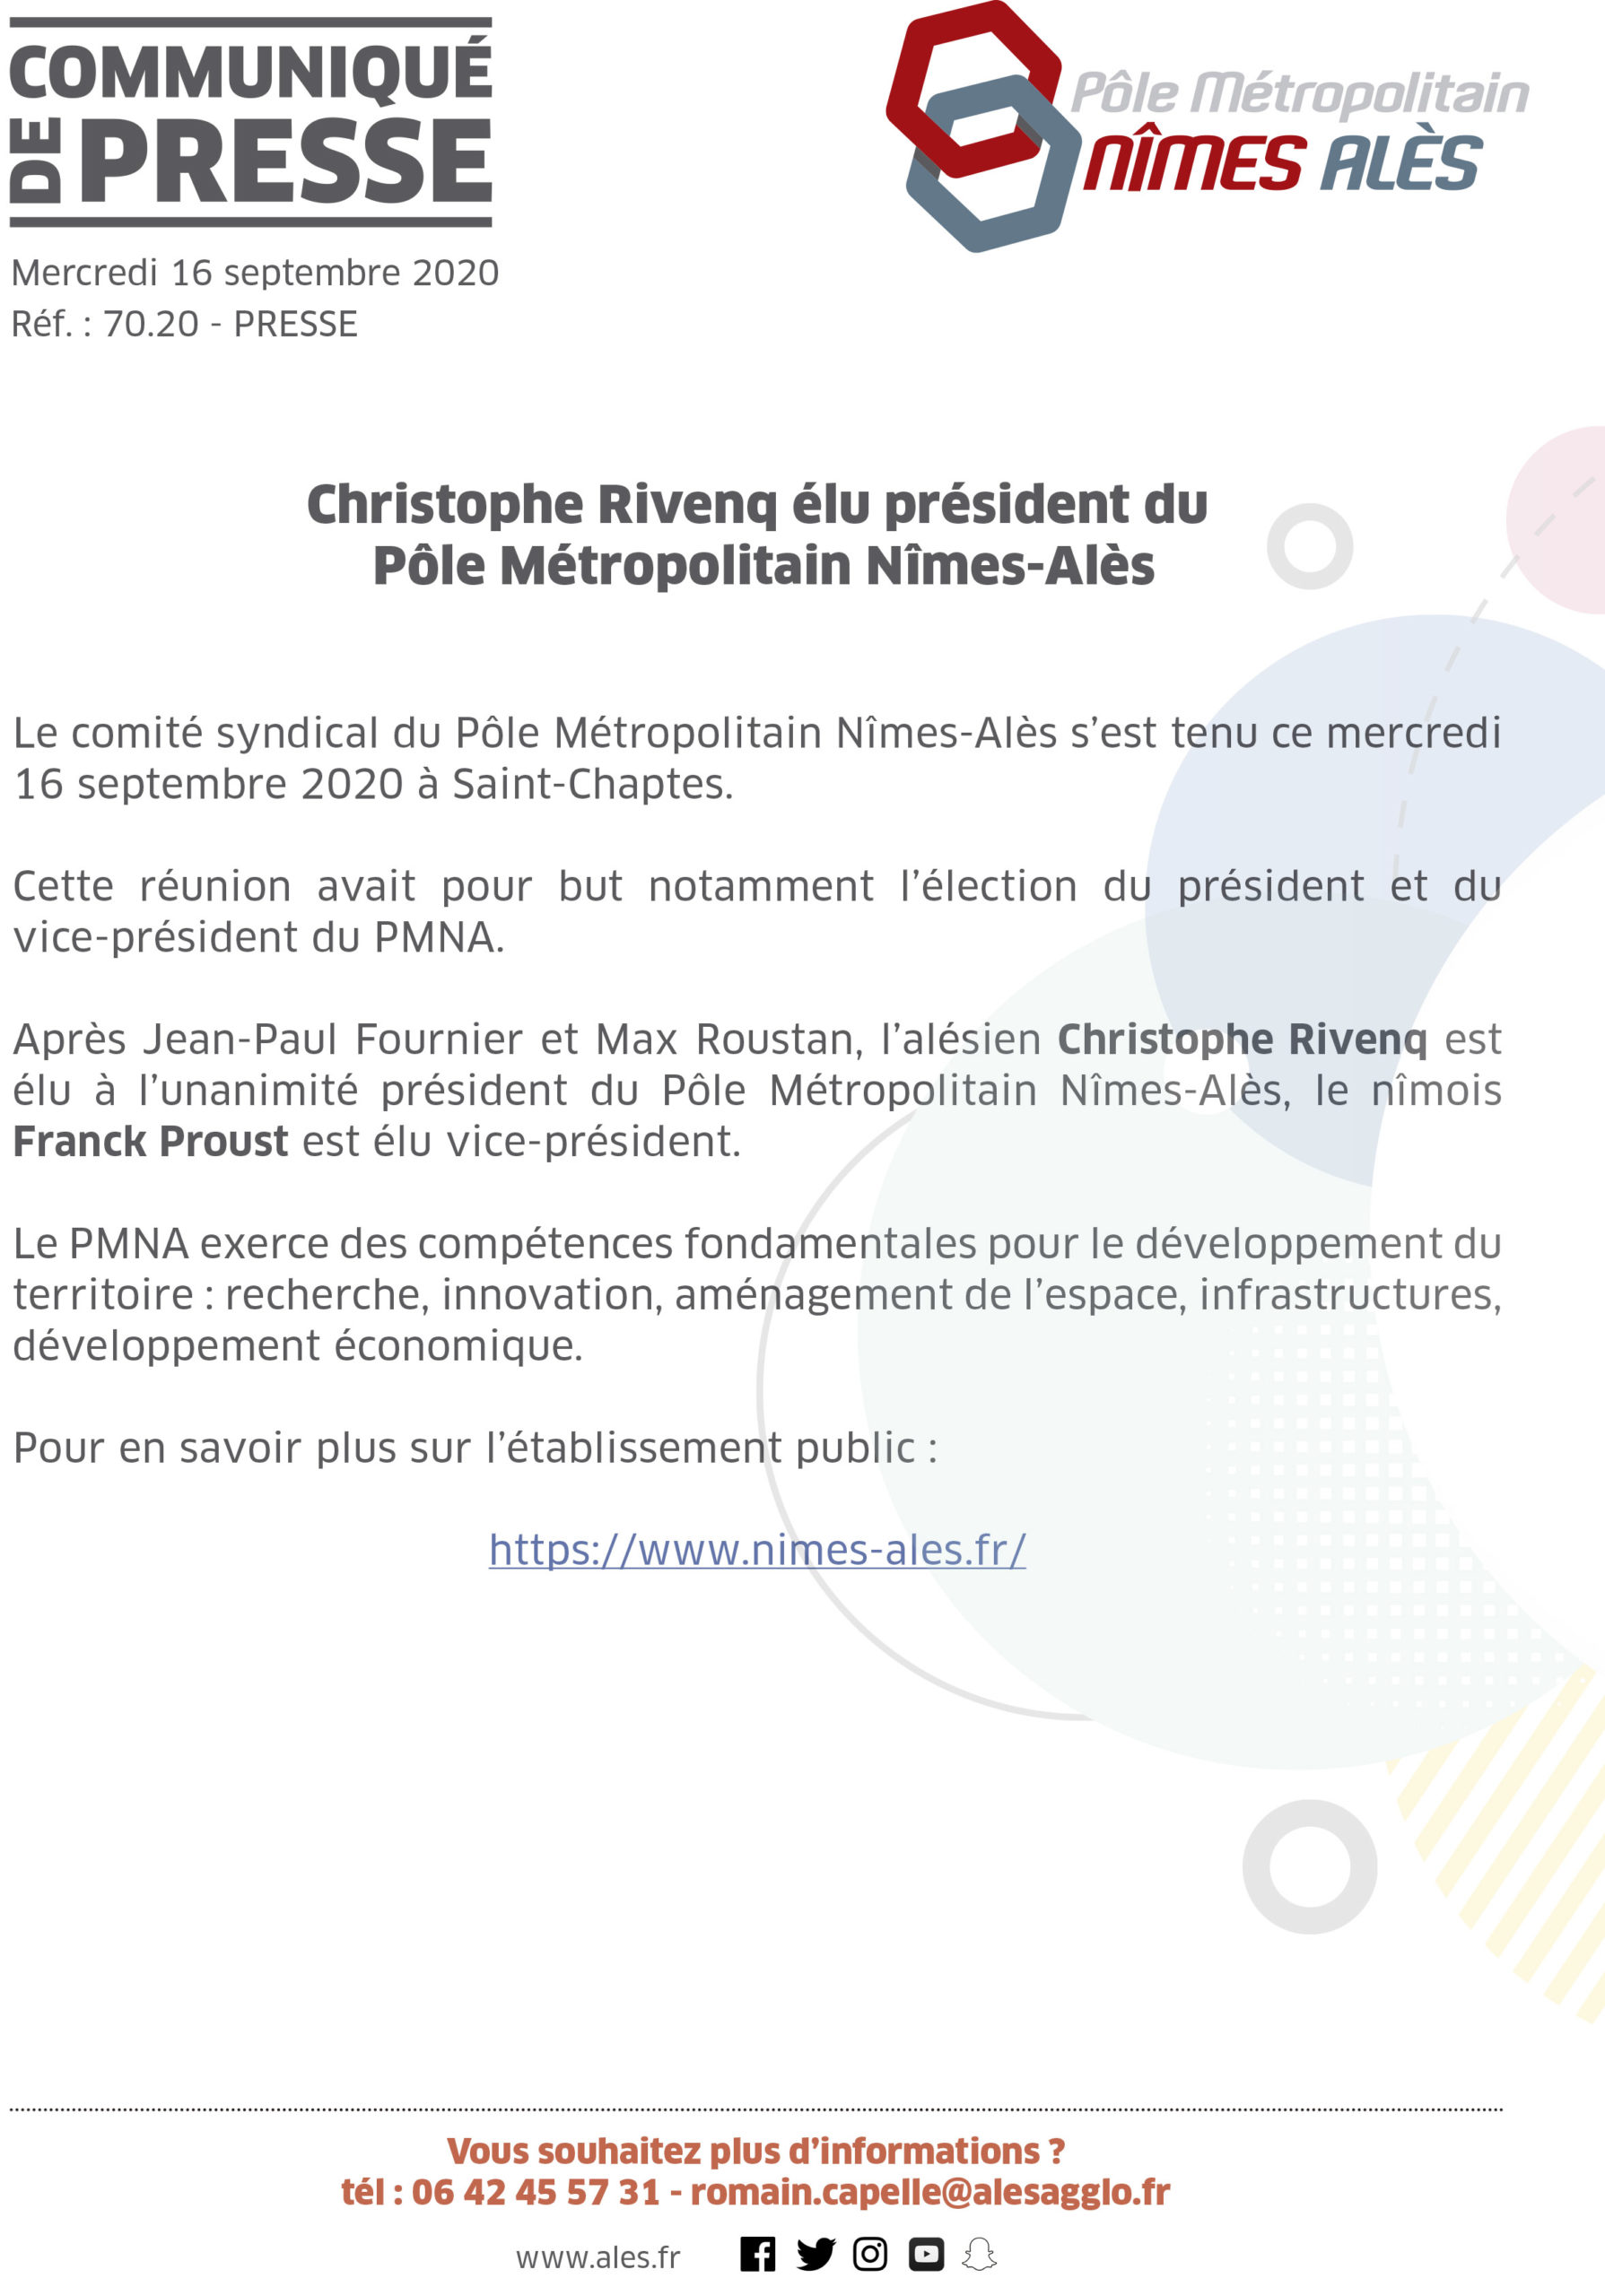 COMMUNIQUÉ DE PRESSE – Christophe Rivenq élu président du Pôle Métropolitain Nîmes-Alès